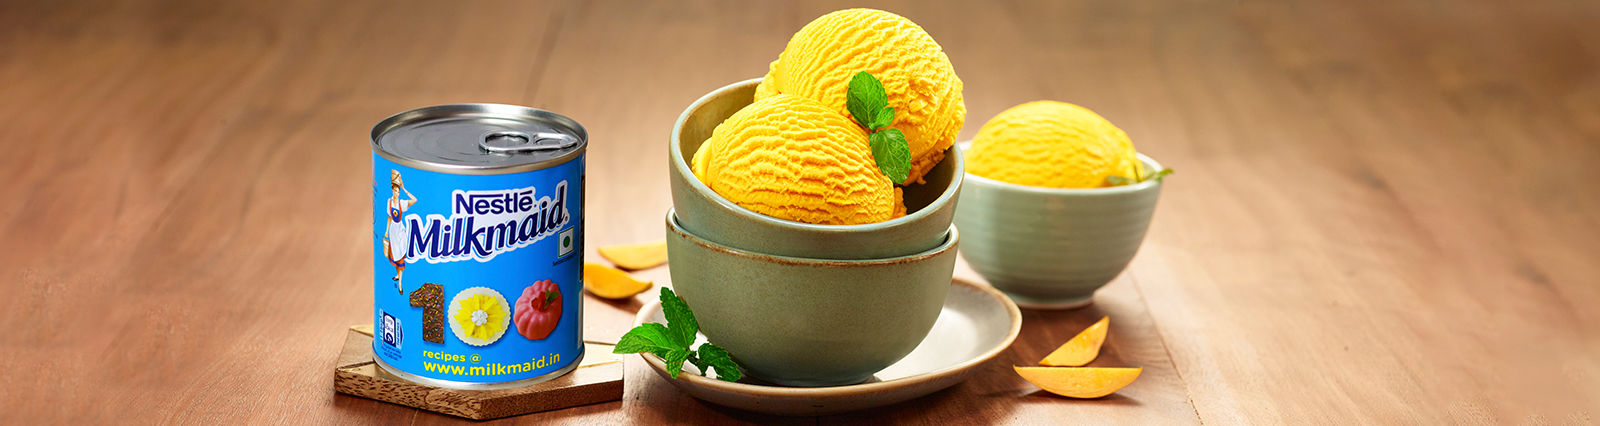 Summer Special Mango Ice Cream Recipe